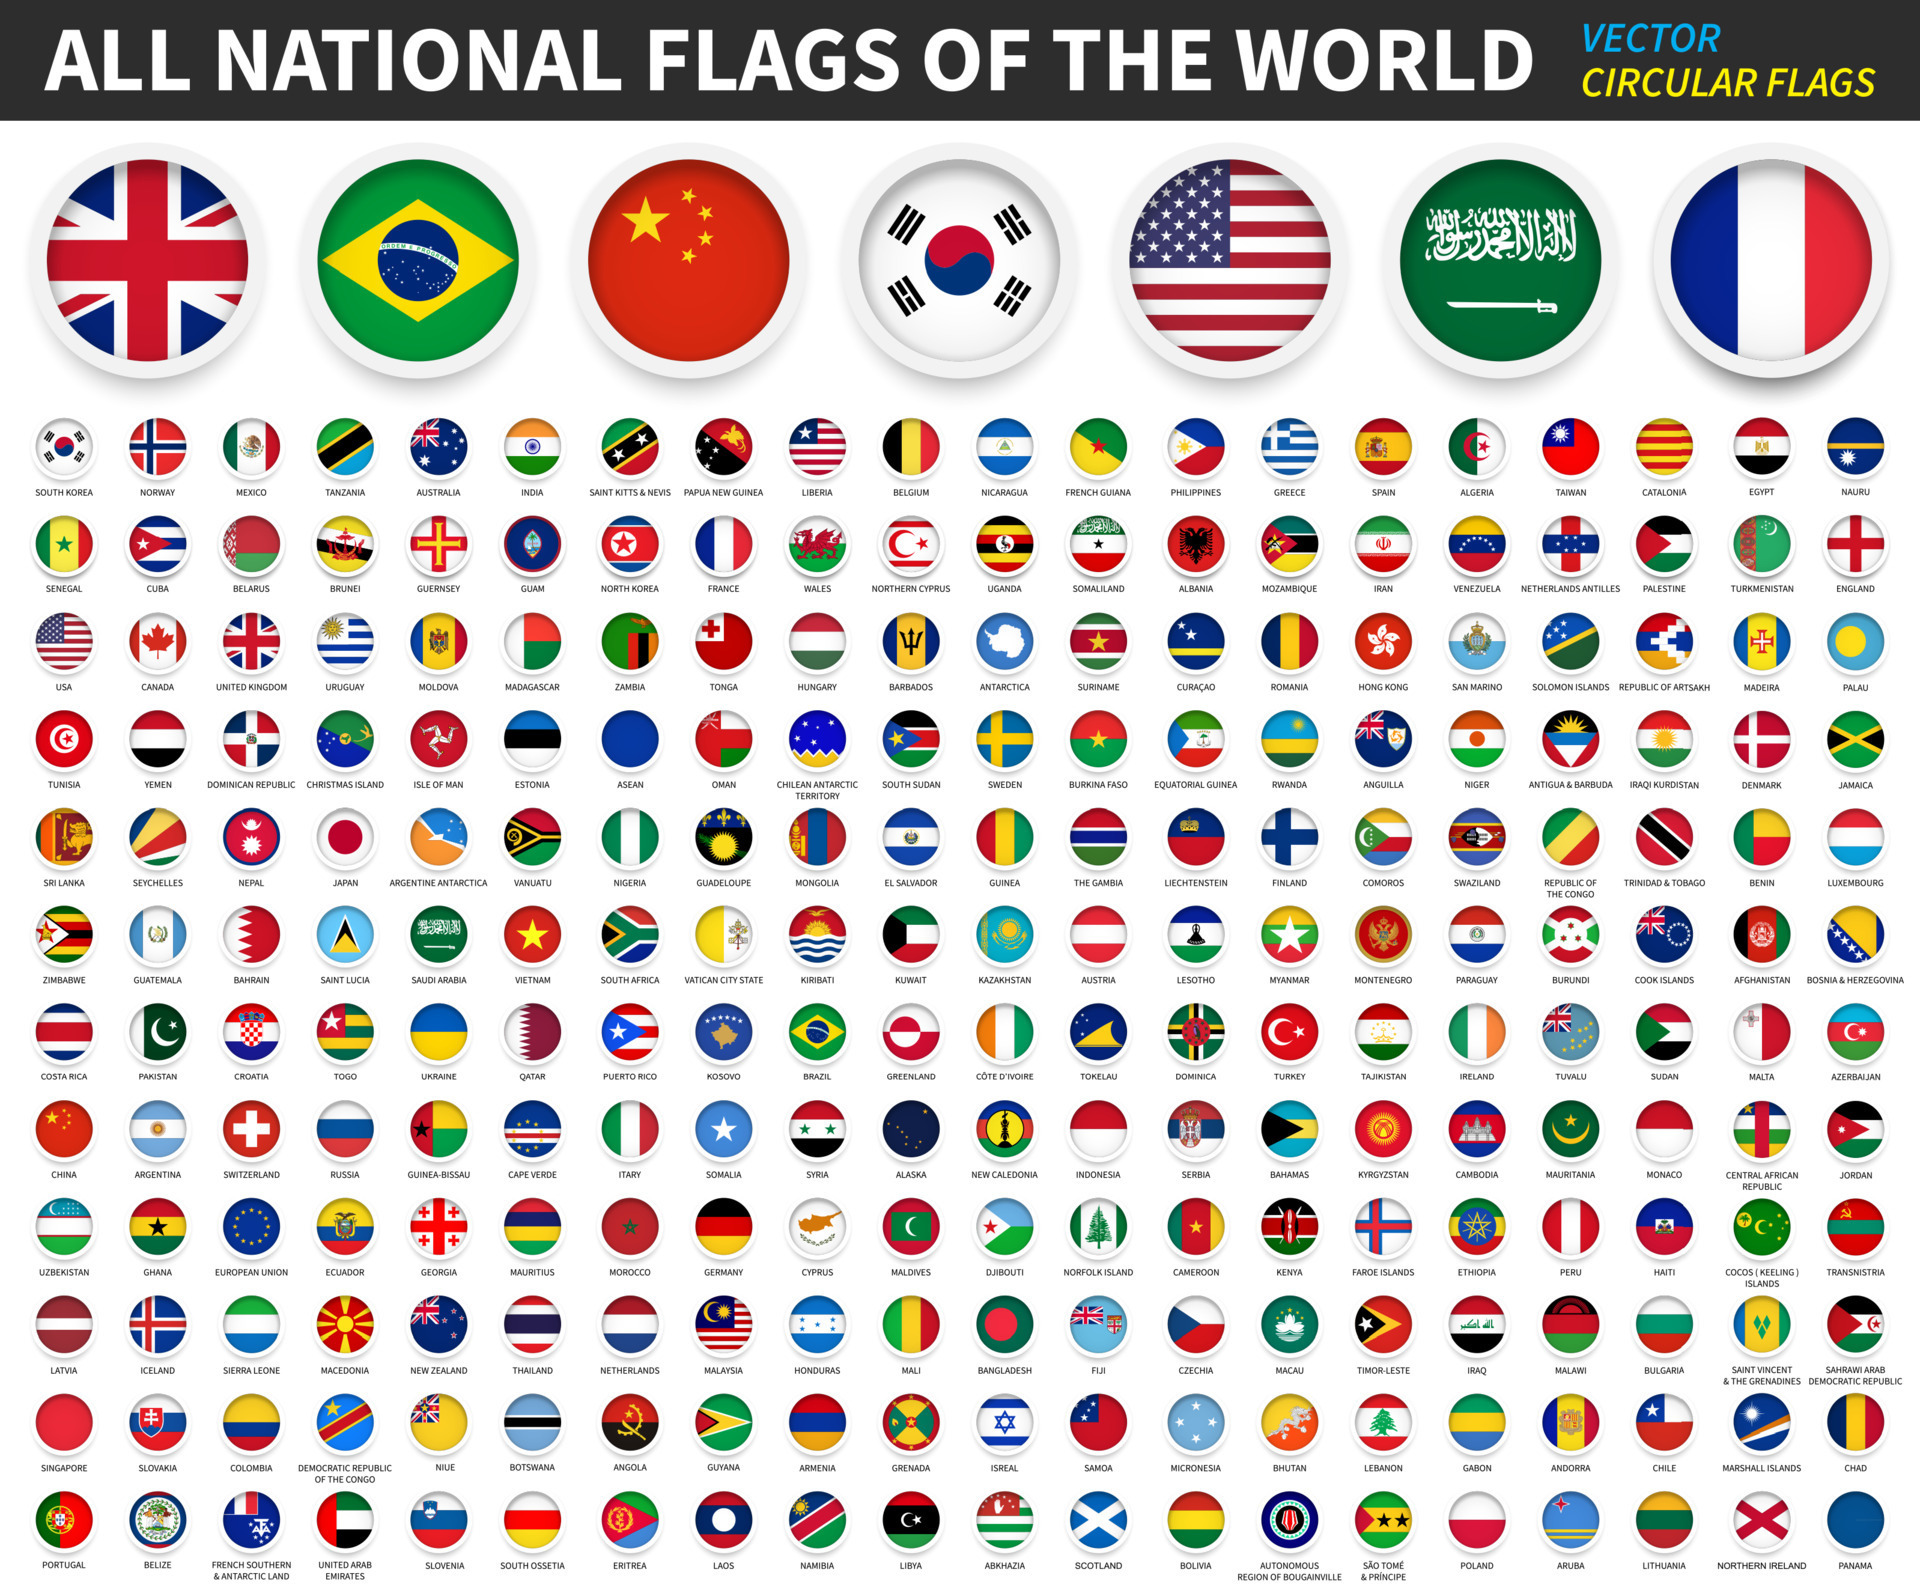 Flaggen aus aller Welt, Nationalflaggen, Fahnen aller Länder